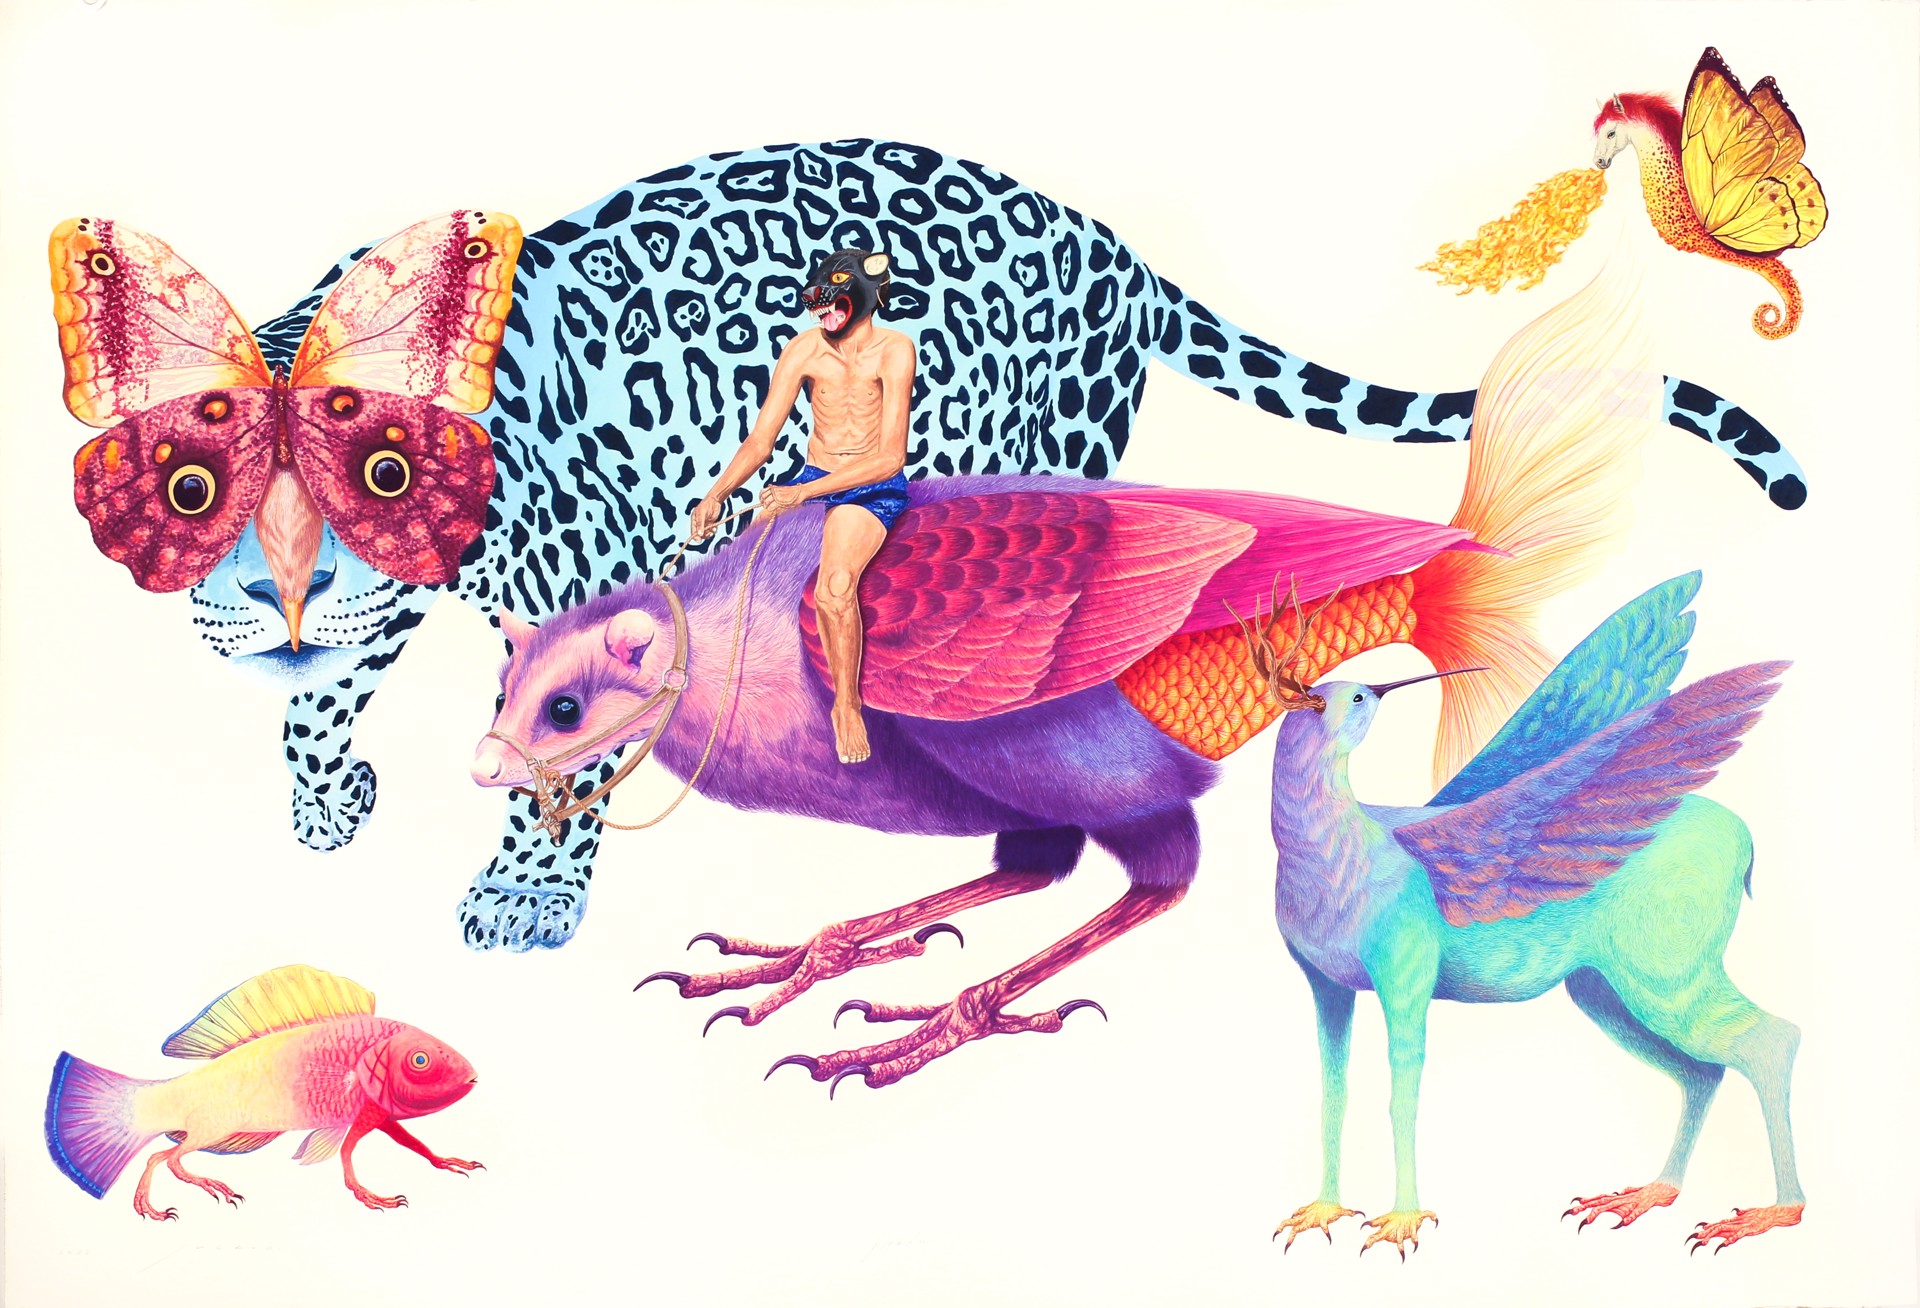 Animalario by Marcos Lucero